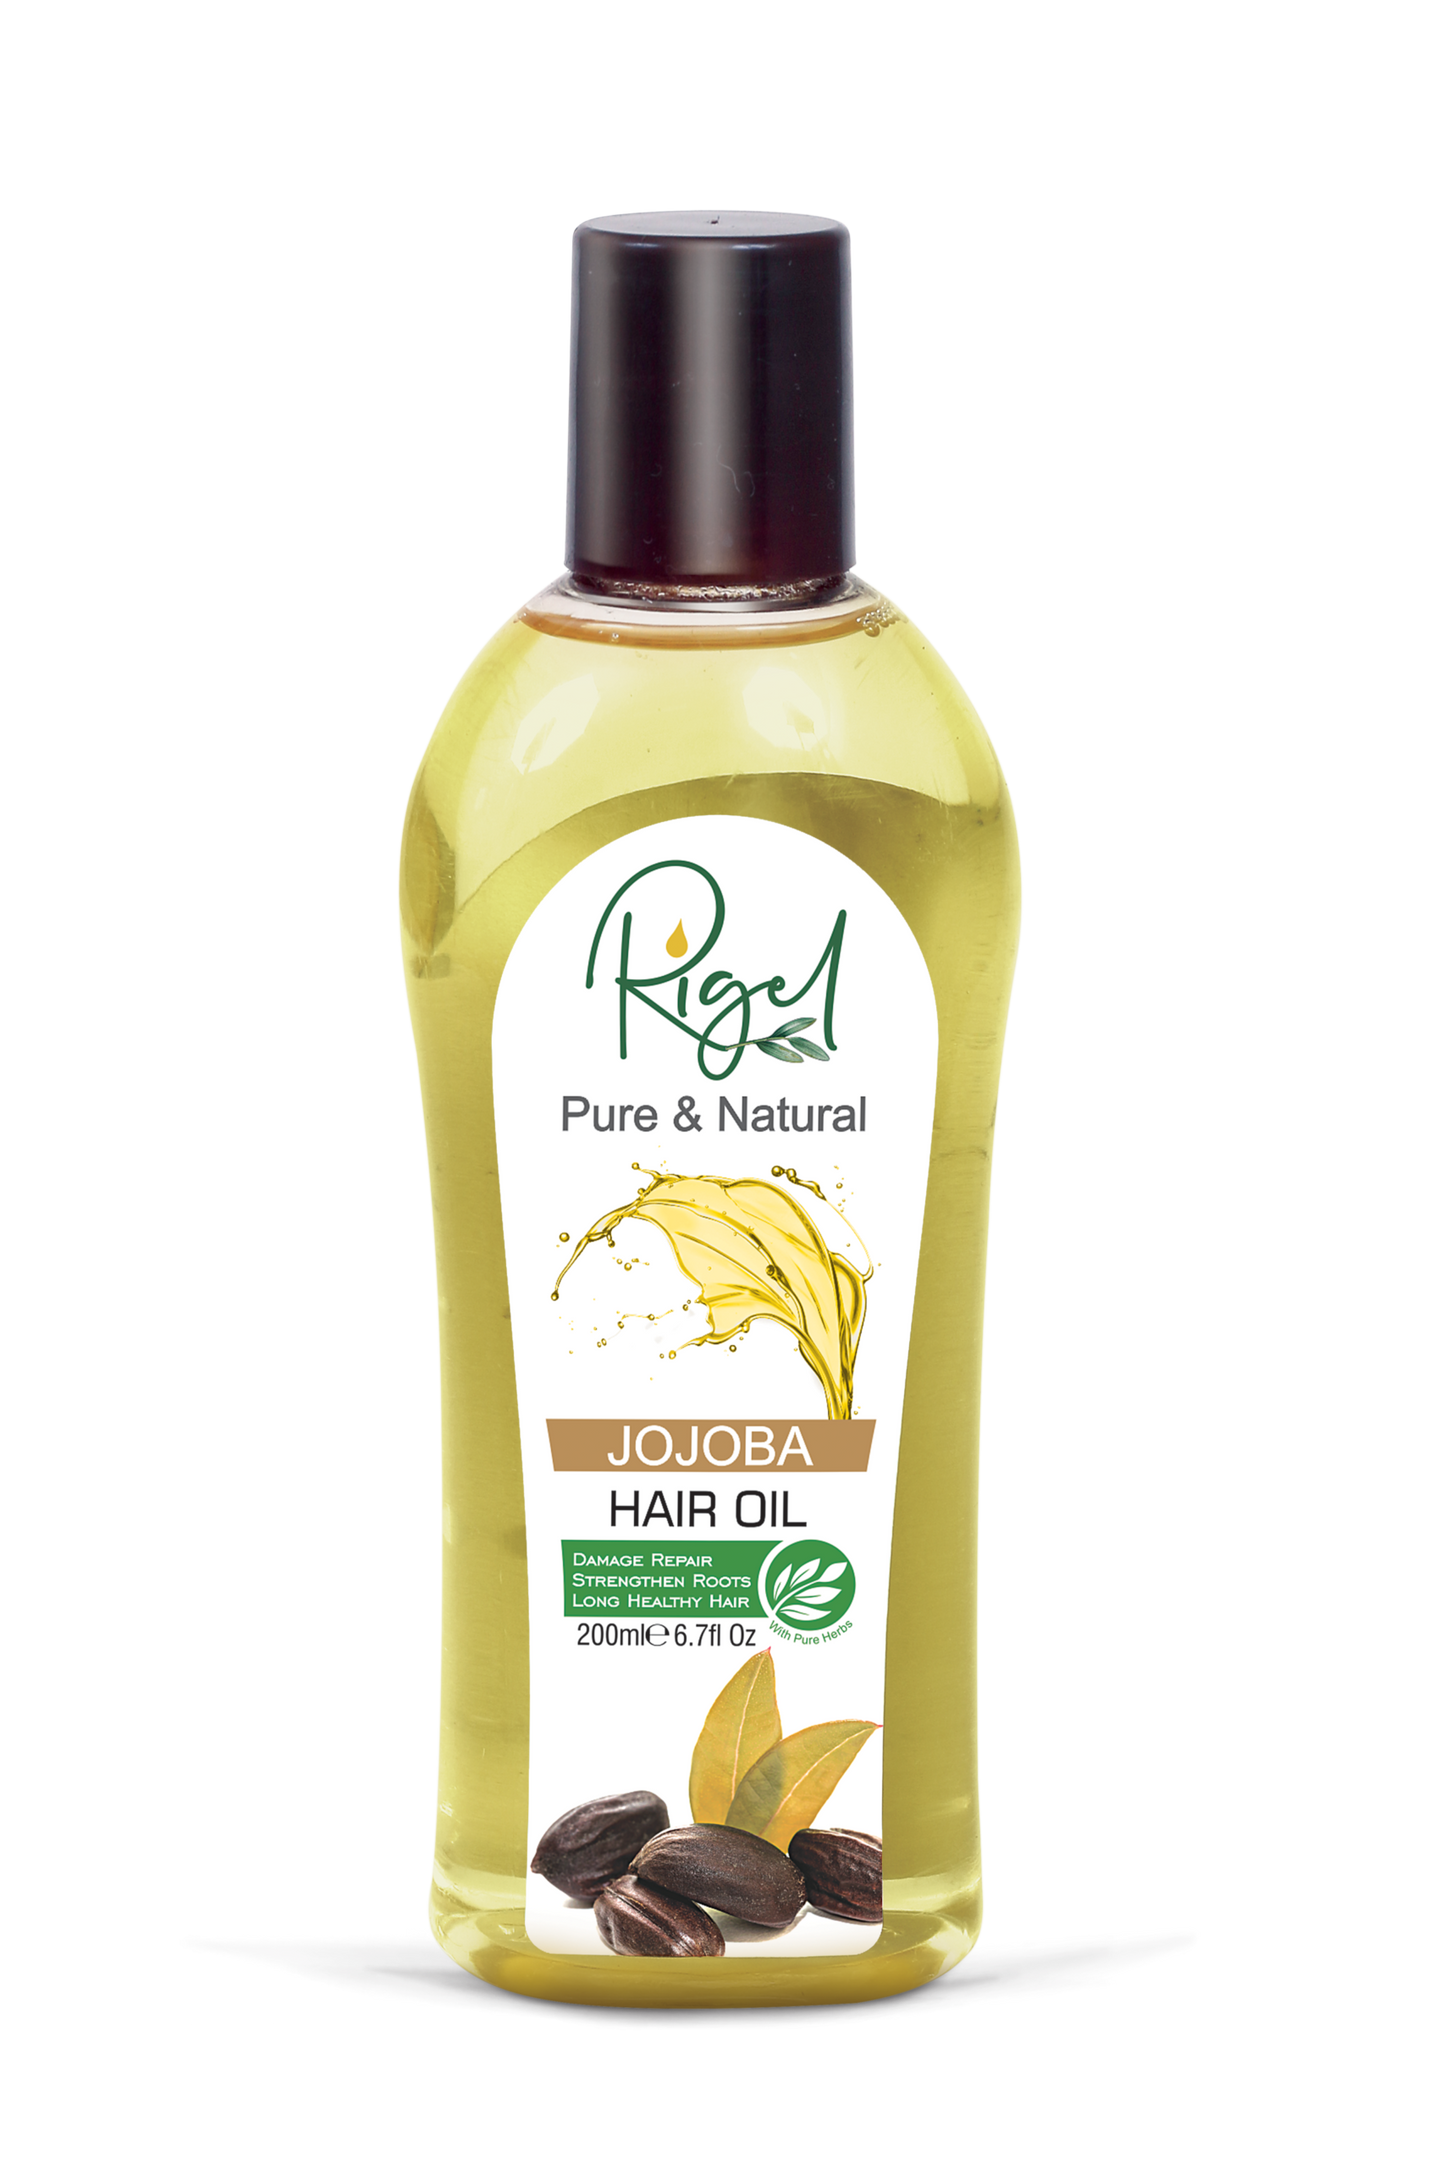 RIGEL - Pure & Natural JOJOBA Hair Oil Damage Repair Strengthen Roots - 200ml